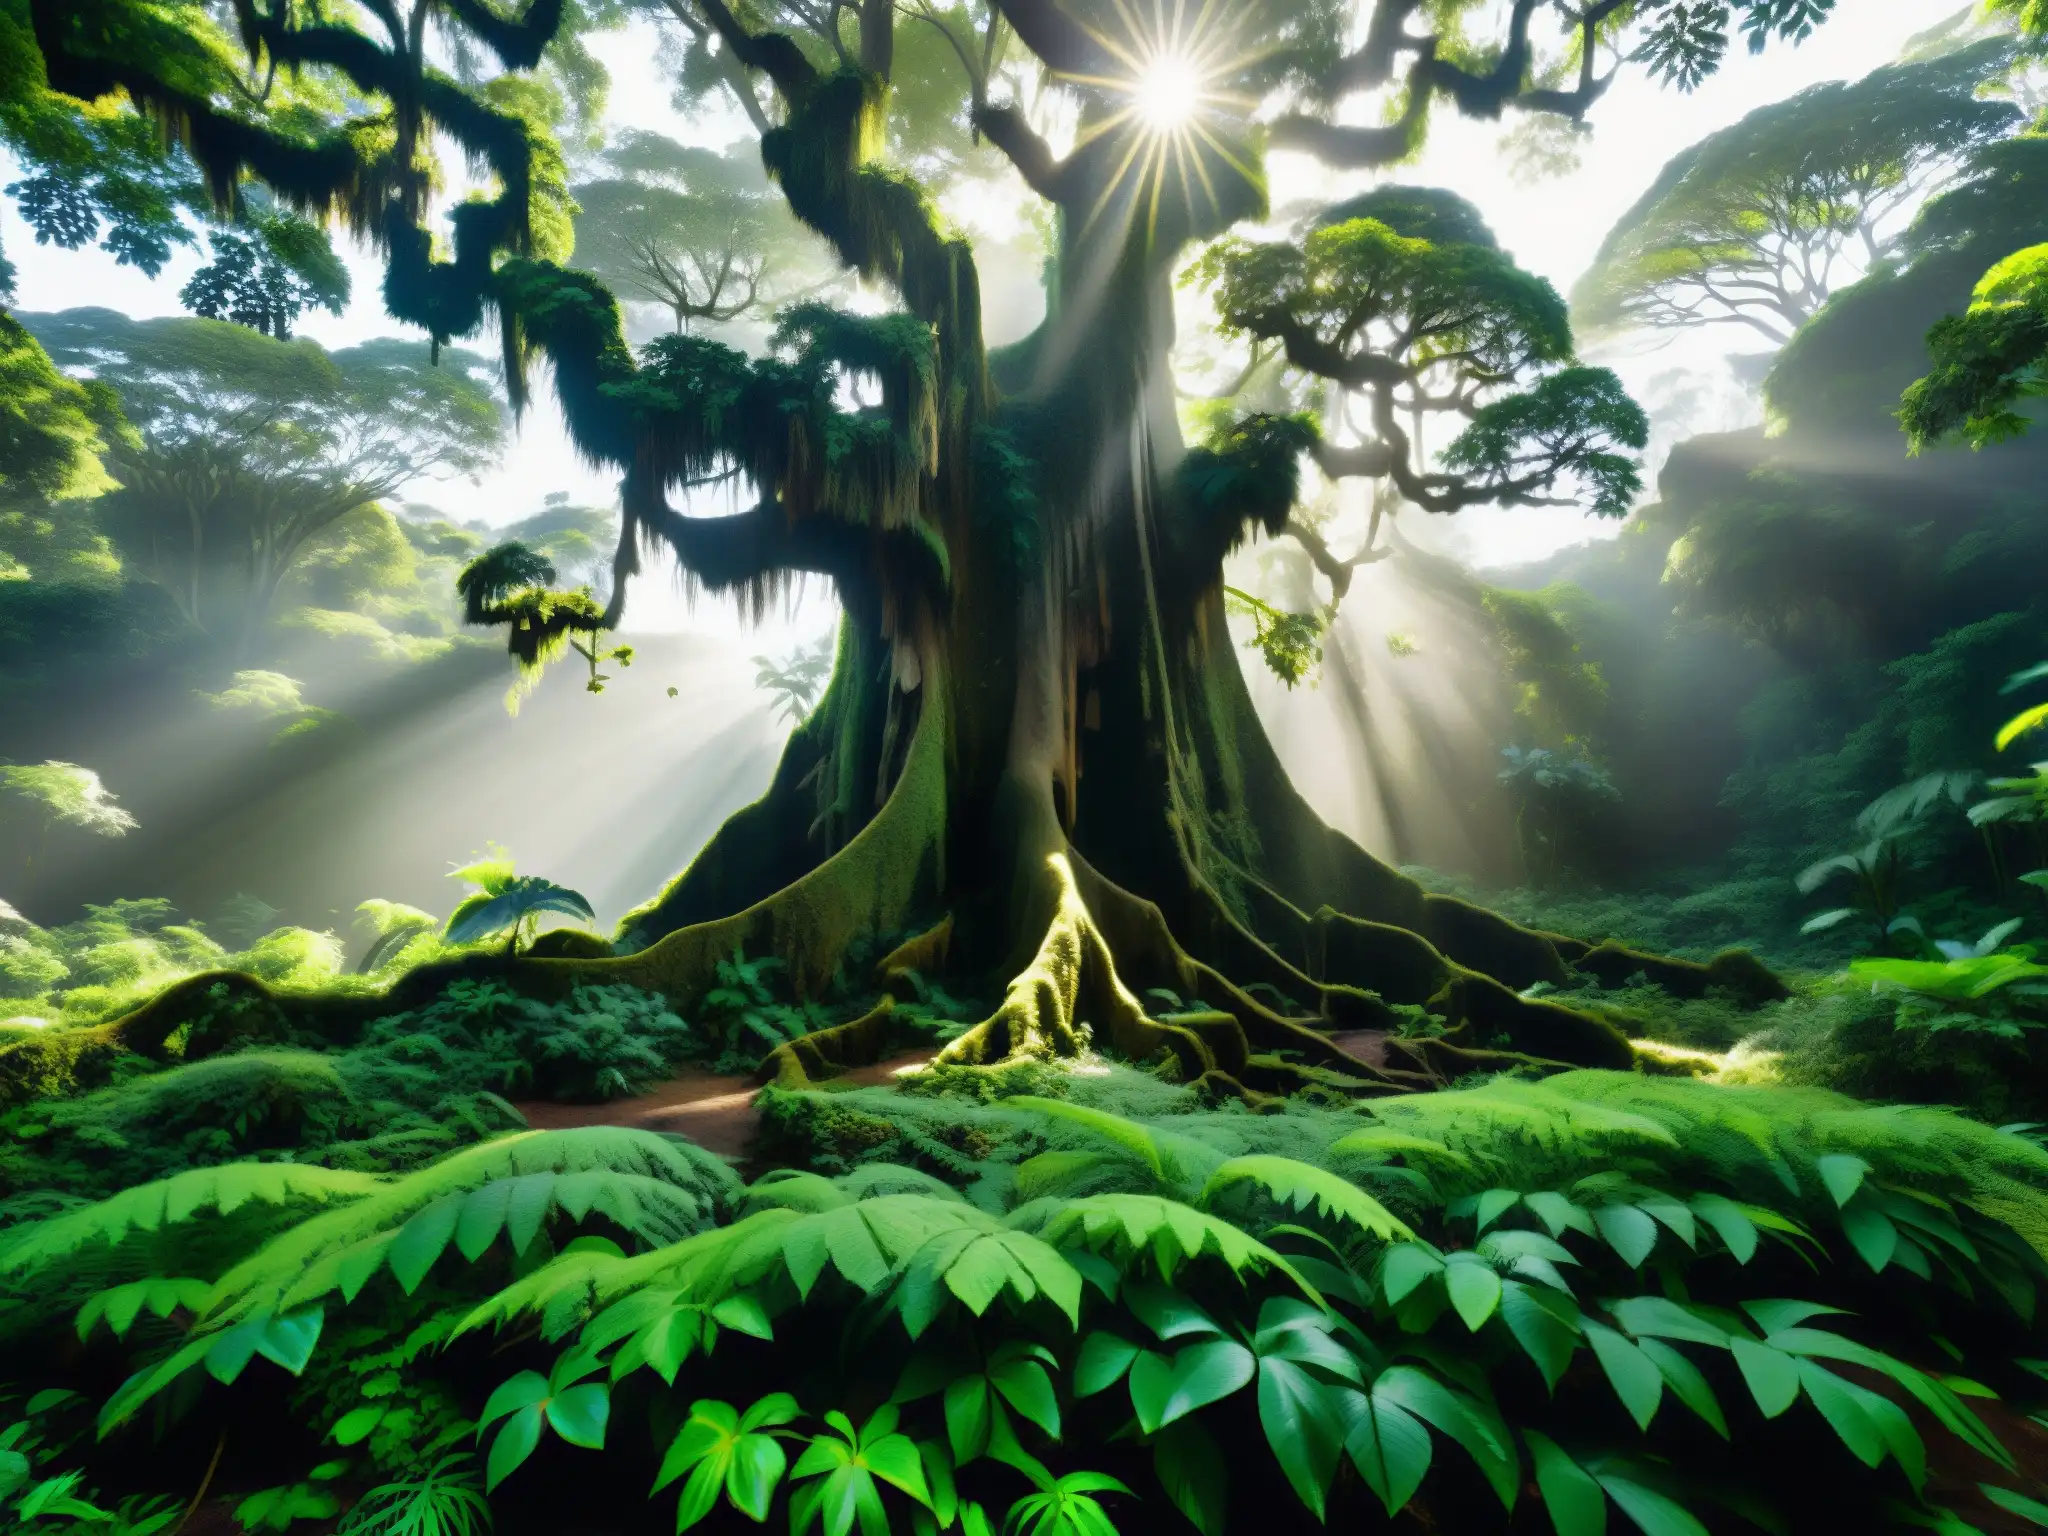 El bosque lluvioso exuberante revela secretos ancestrales del árbol hablador